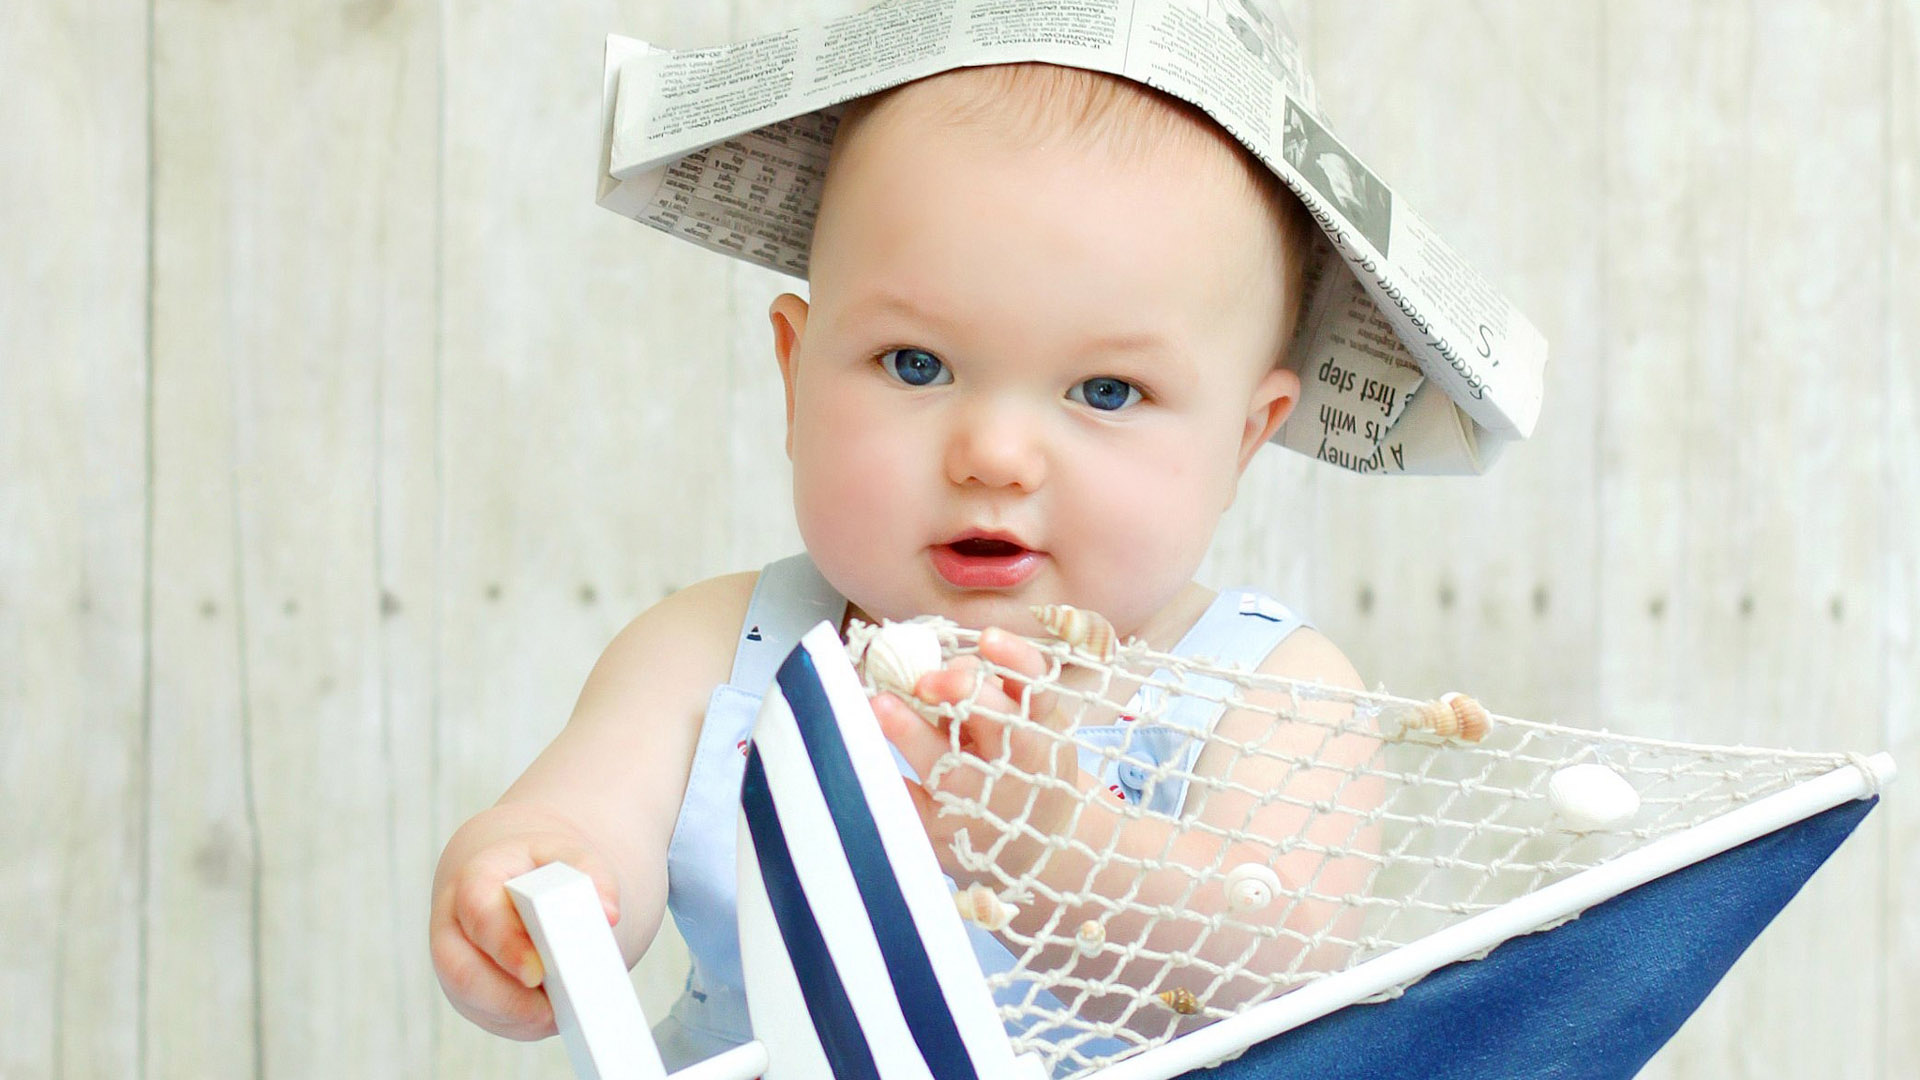 Blue Eyes Cute Baby Child Is Wearing Light Blue Dress Standing In Blur White Wallpaper 2K Cute